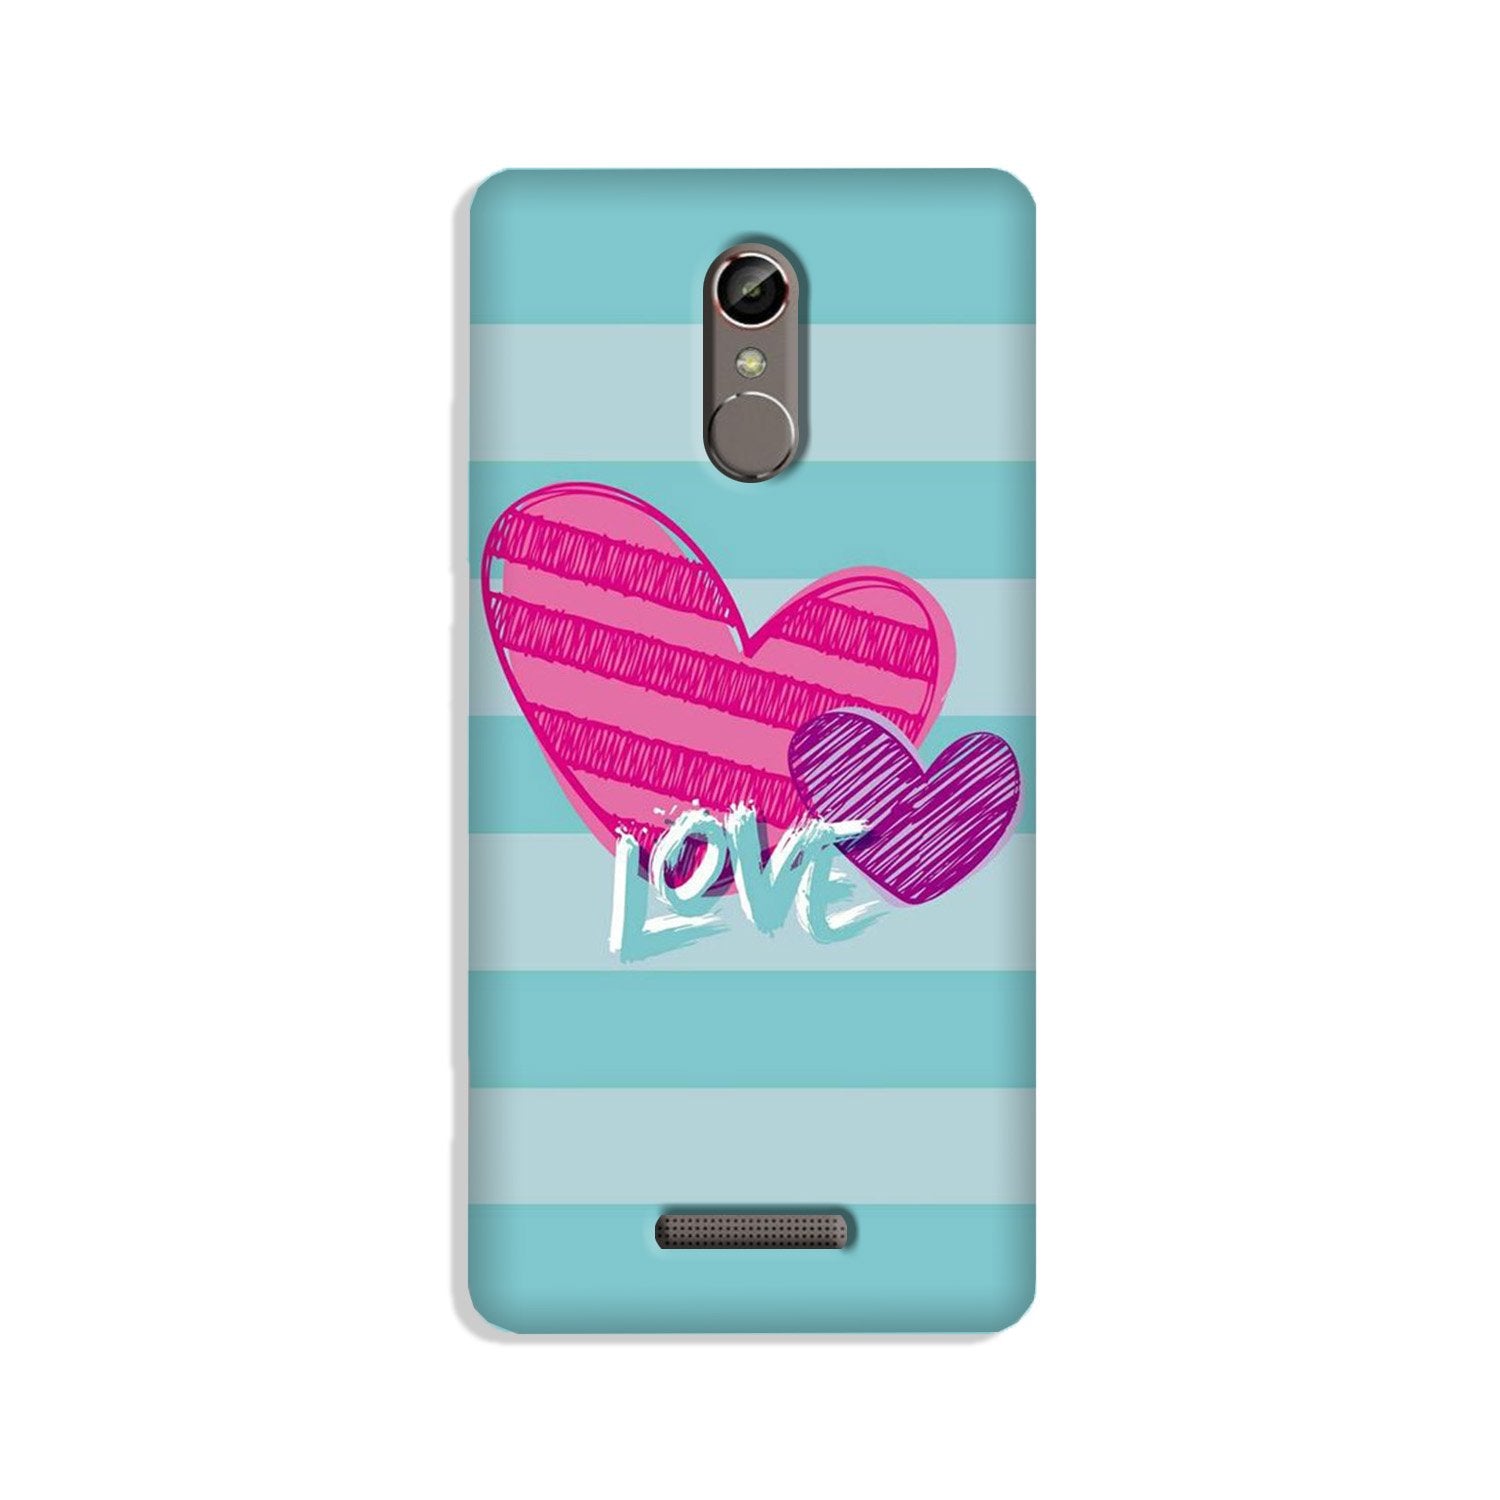 Love Case for Gionee S6s (Design No. 299)